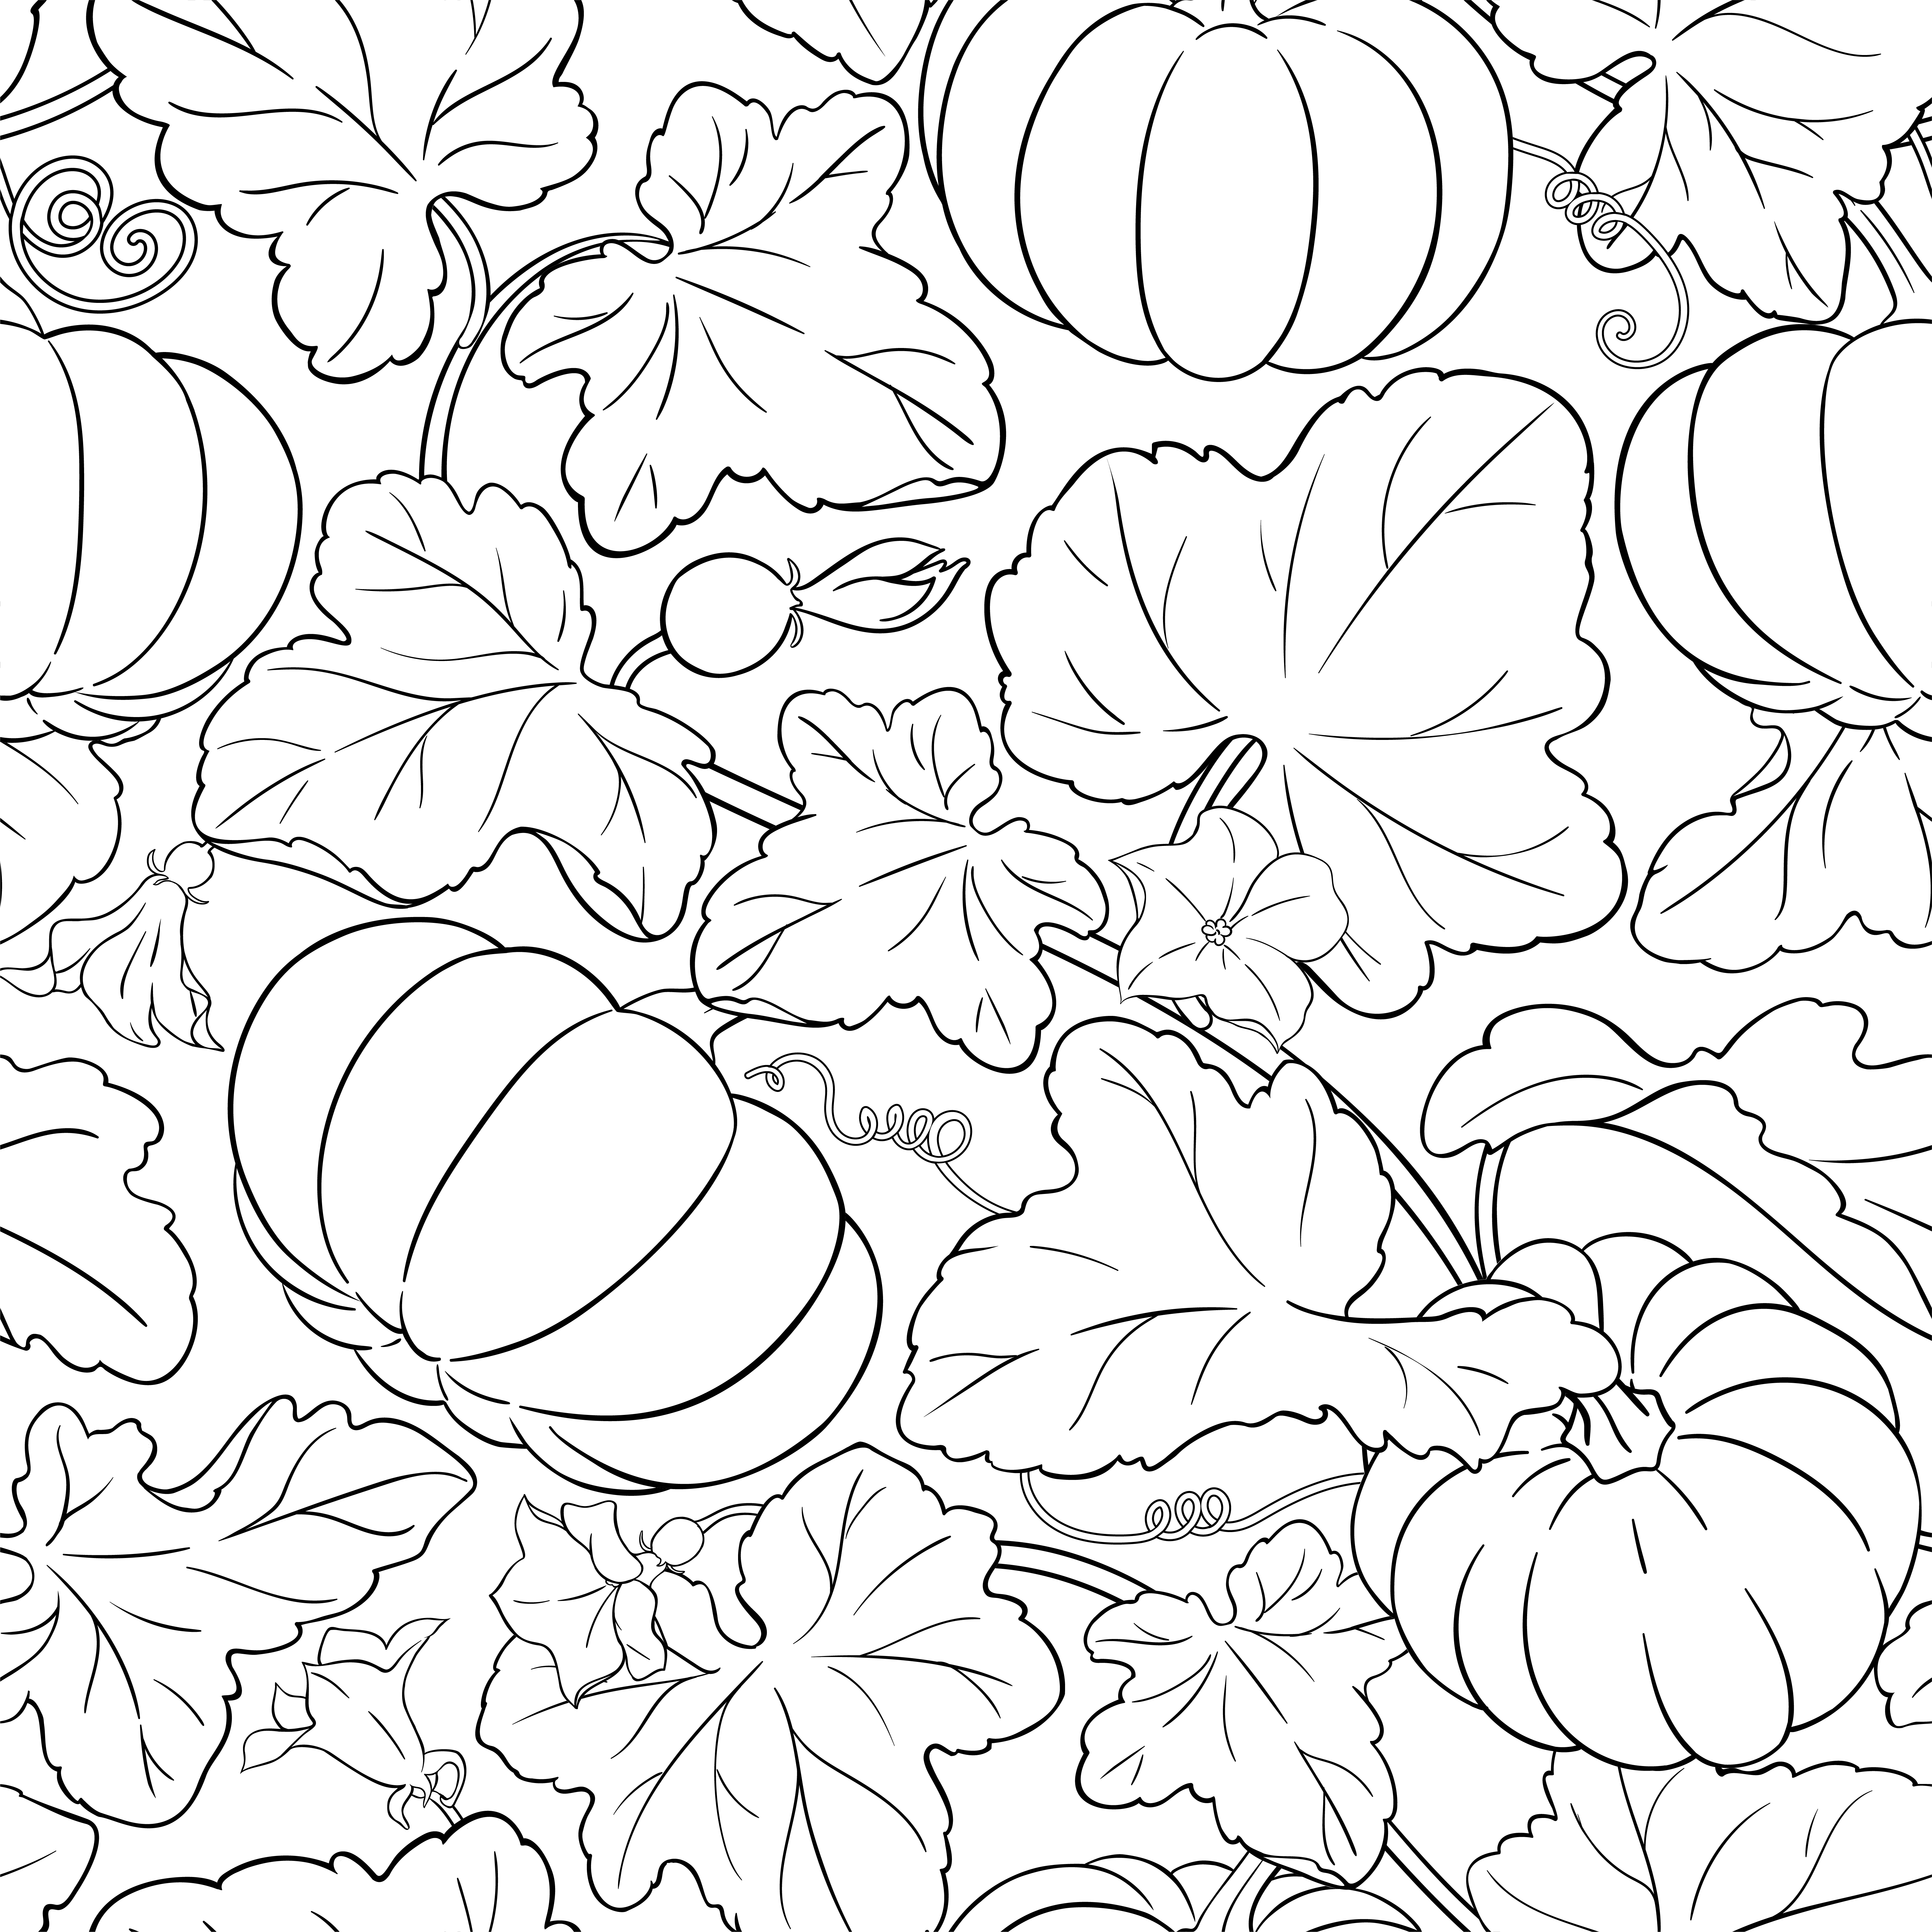 pumpkin vector pattern on white background. pumpkin vector pattern